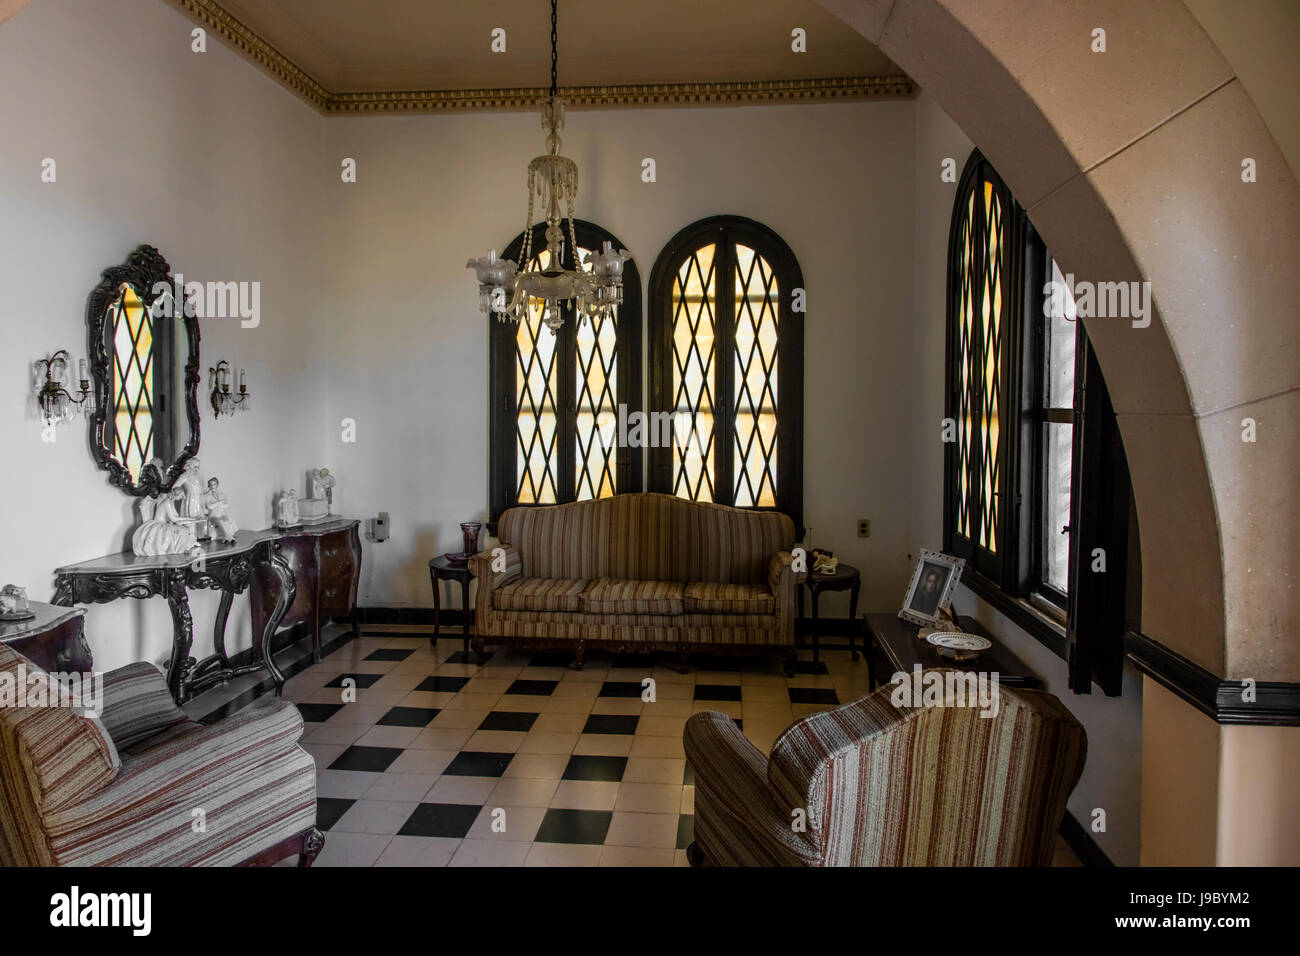 L'intérieur d'une casa particular ou chez l'habitant dans le quartier de Punta Gorda - Cienfuegos, Cuba Banque D'Images